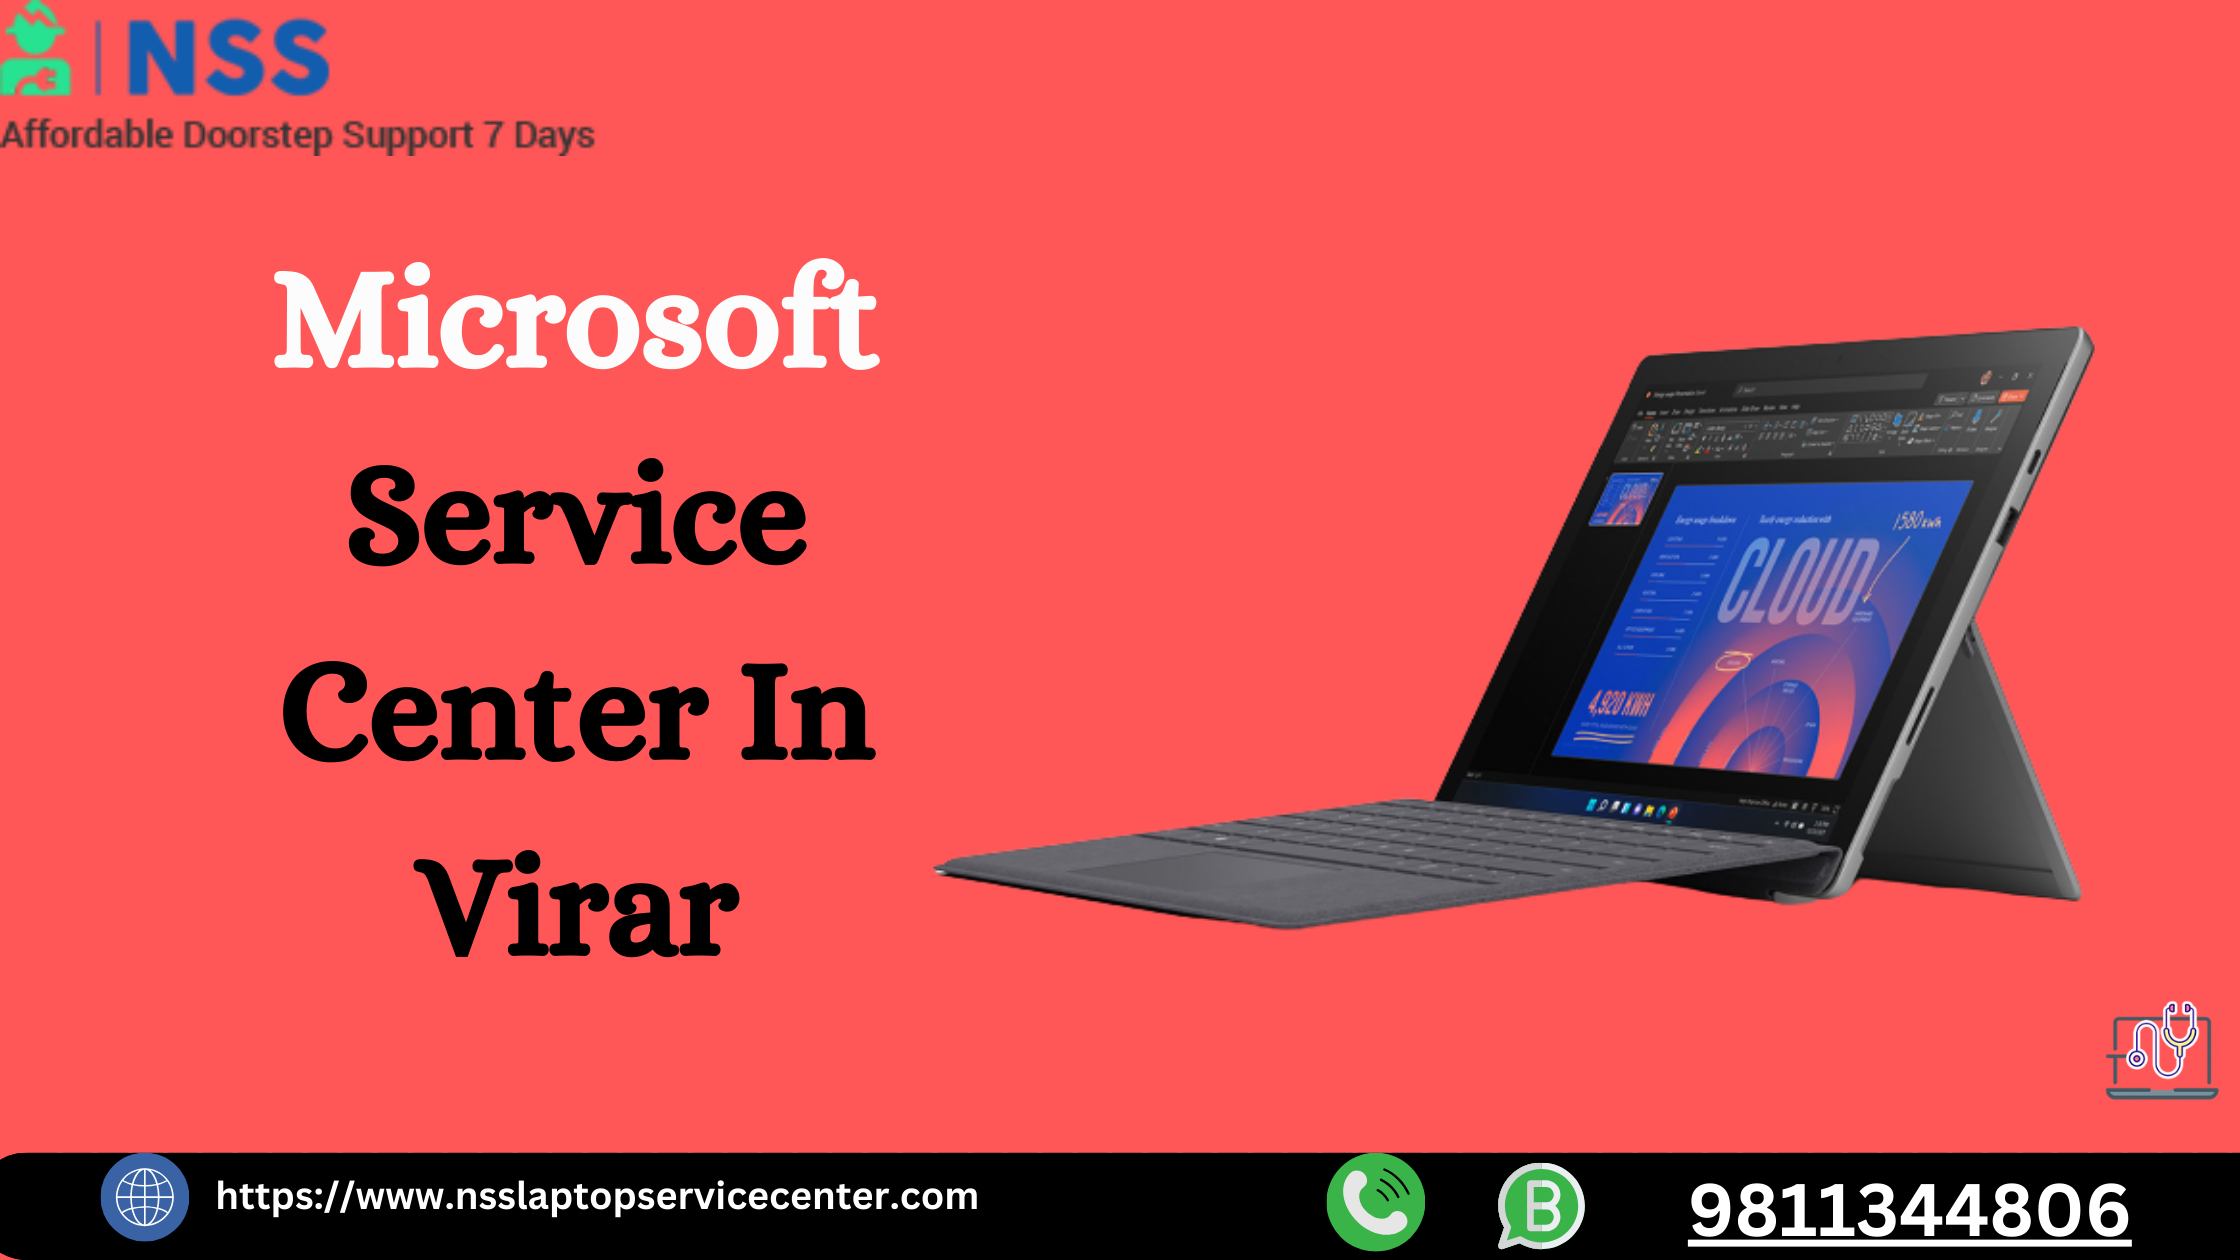 Microsoft Service Center in Virar Near Mumbai